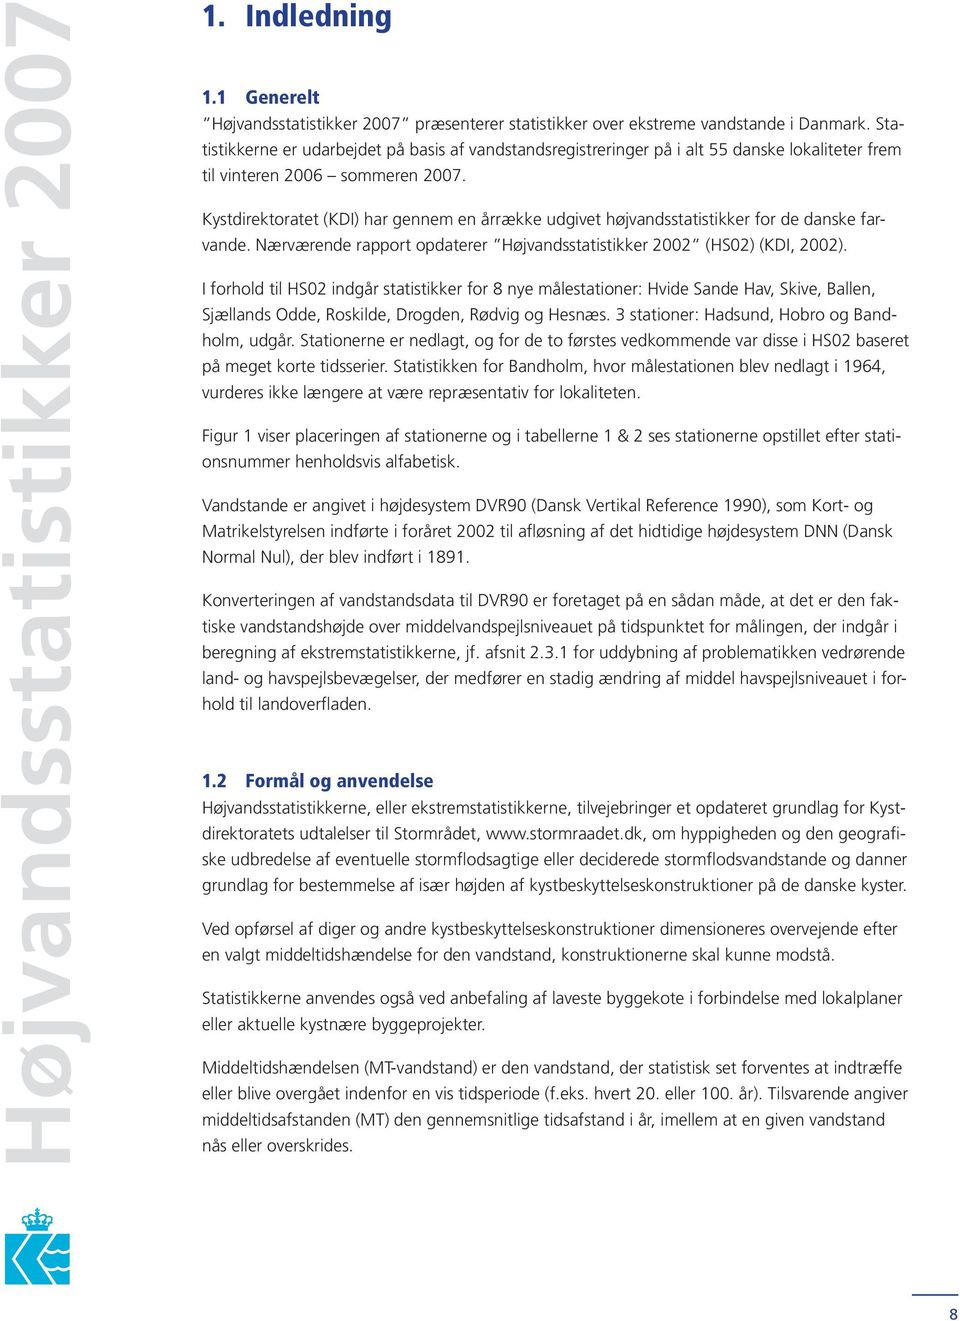 Kystdirektoratet (KDI) har gennem en årrække udgivet højvandsstatistikker for de danske farvande. Nærværende rapport opdaterer Højvandsstatistikker 2002 (HS02) (KDI, 2002).